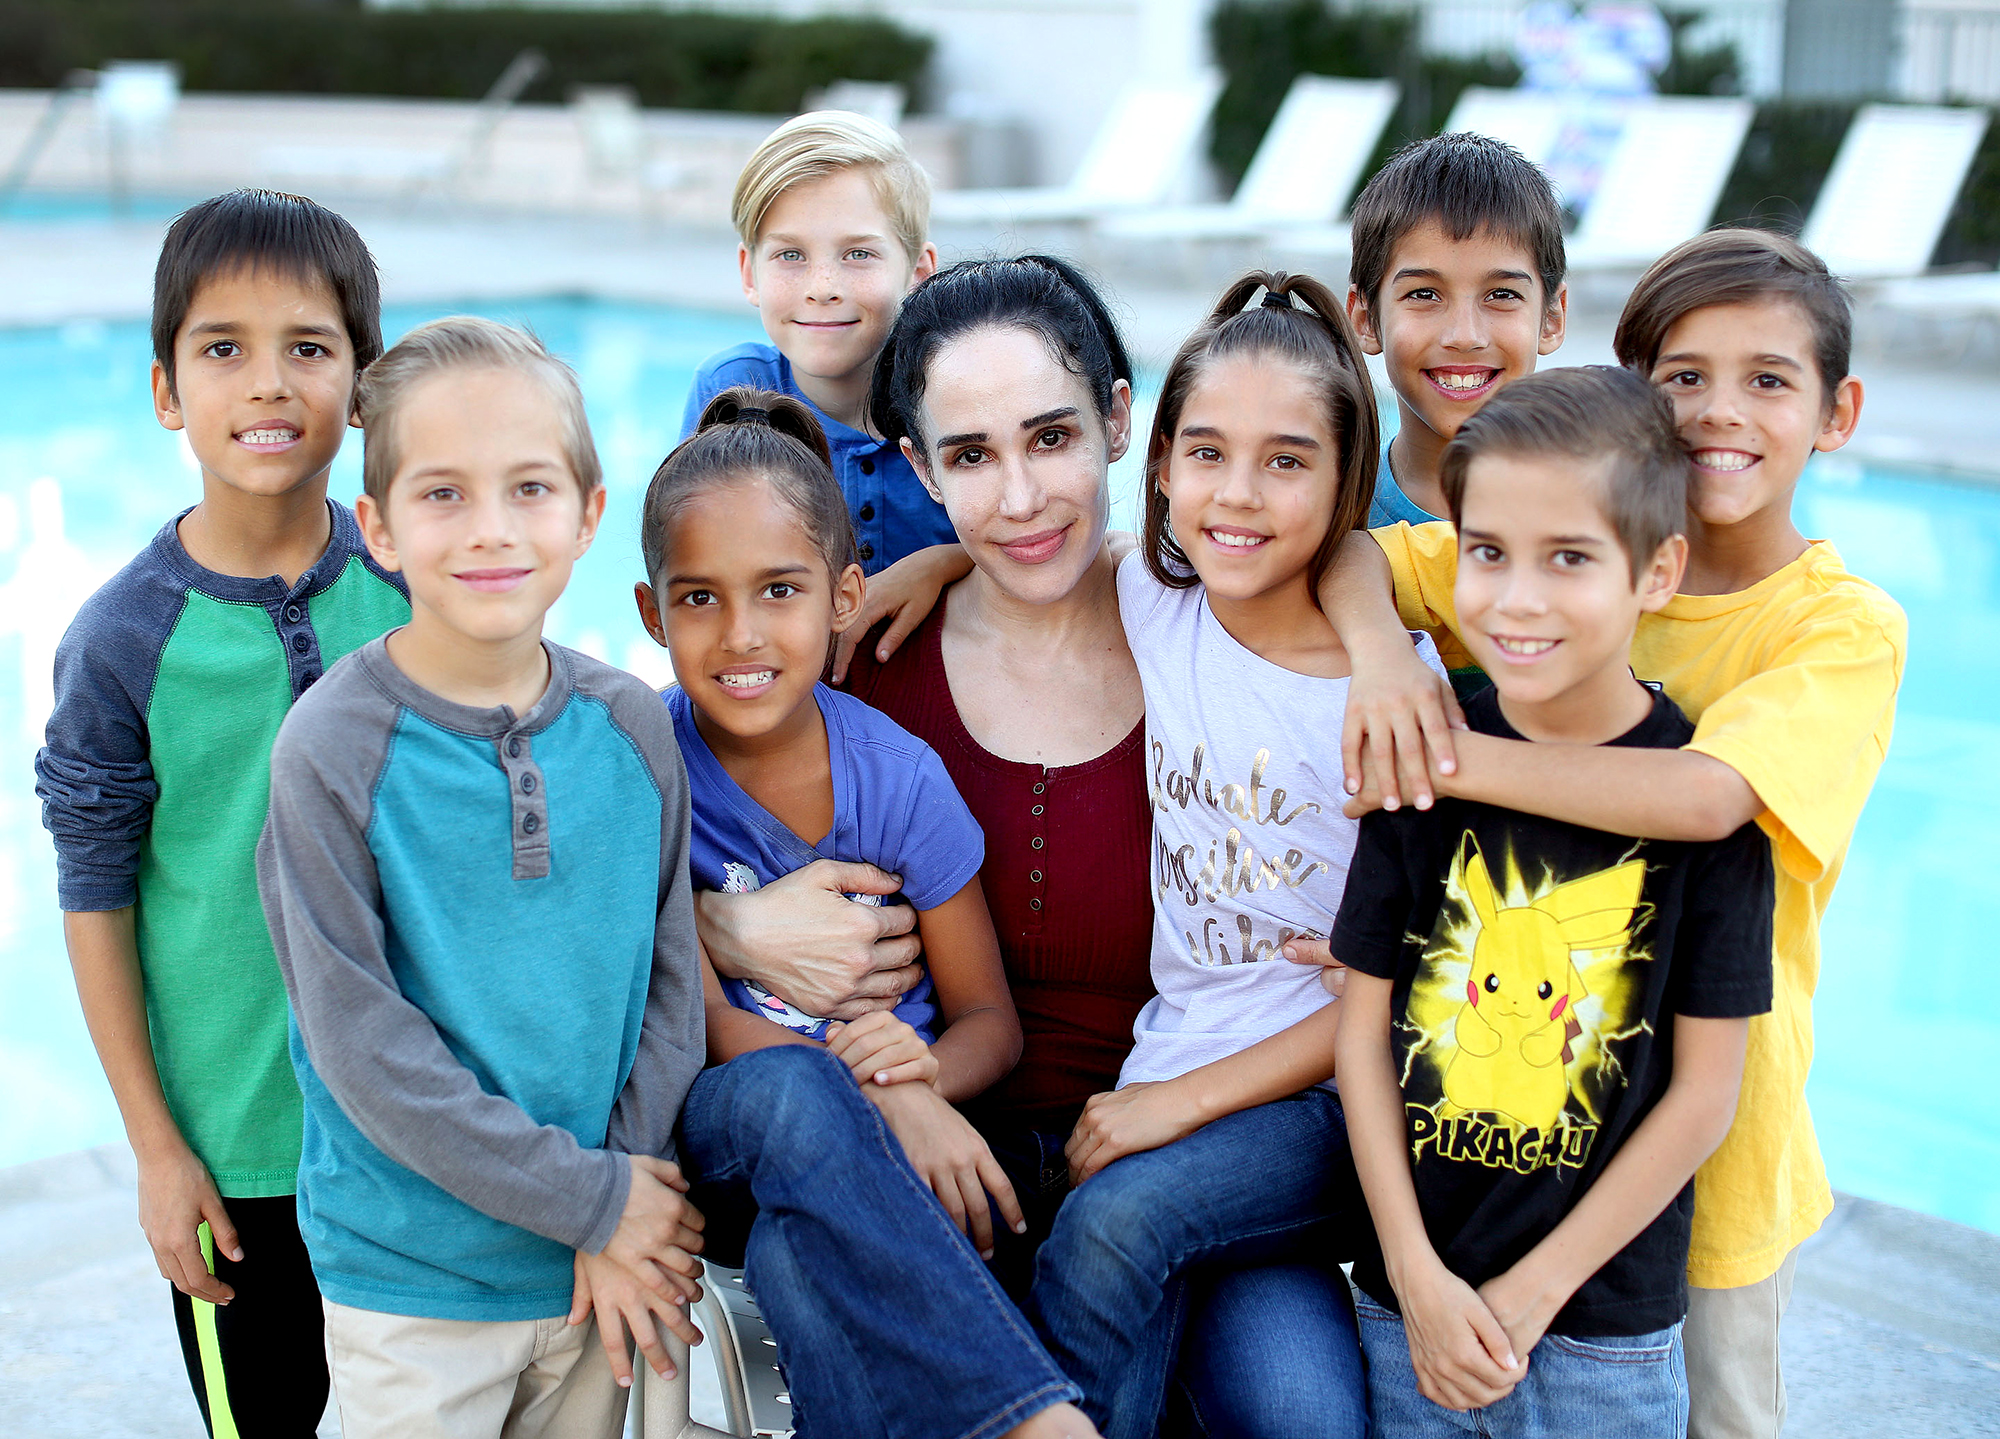 Octomom' Nadya Suleman Celebrates 8 Children's 13th Birthday